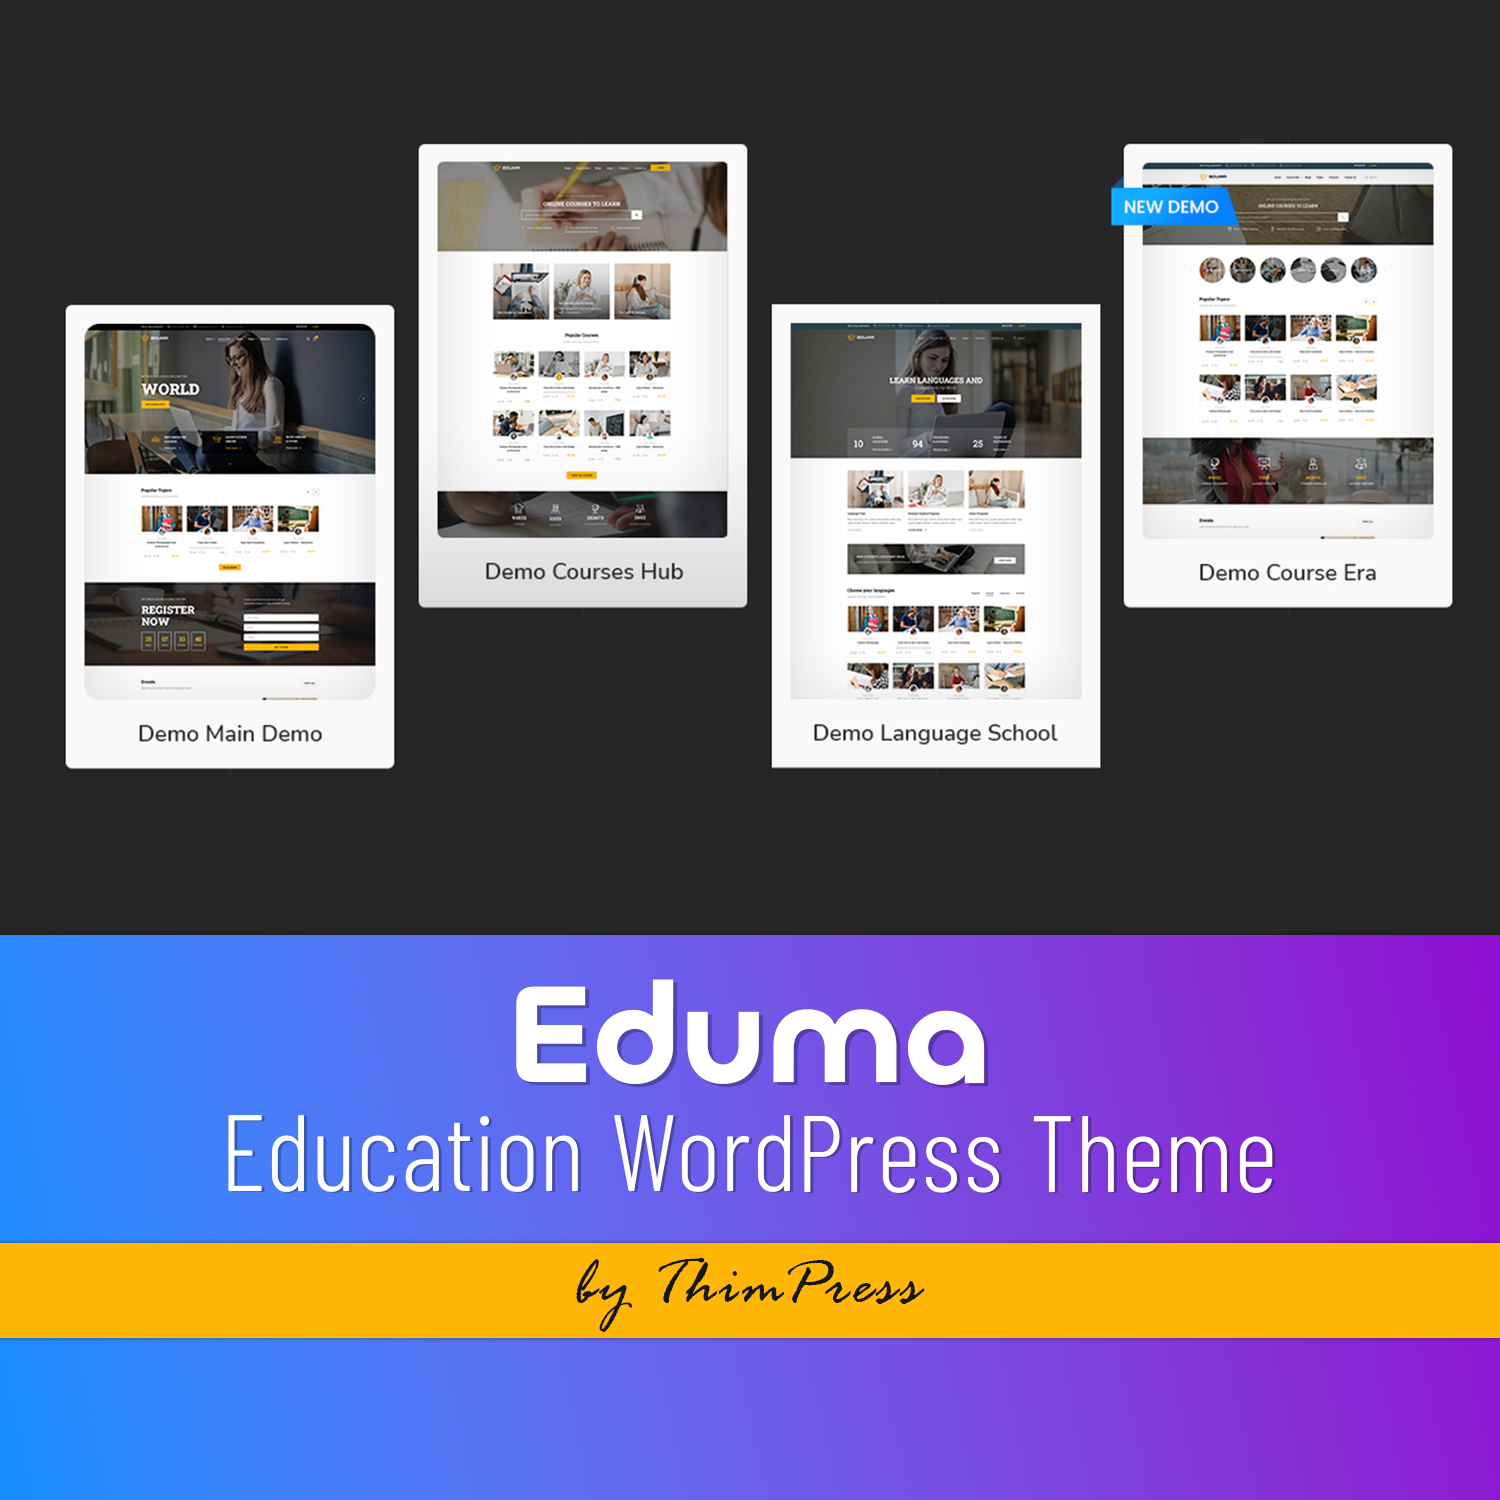 Images with eduma education wordpress theme.